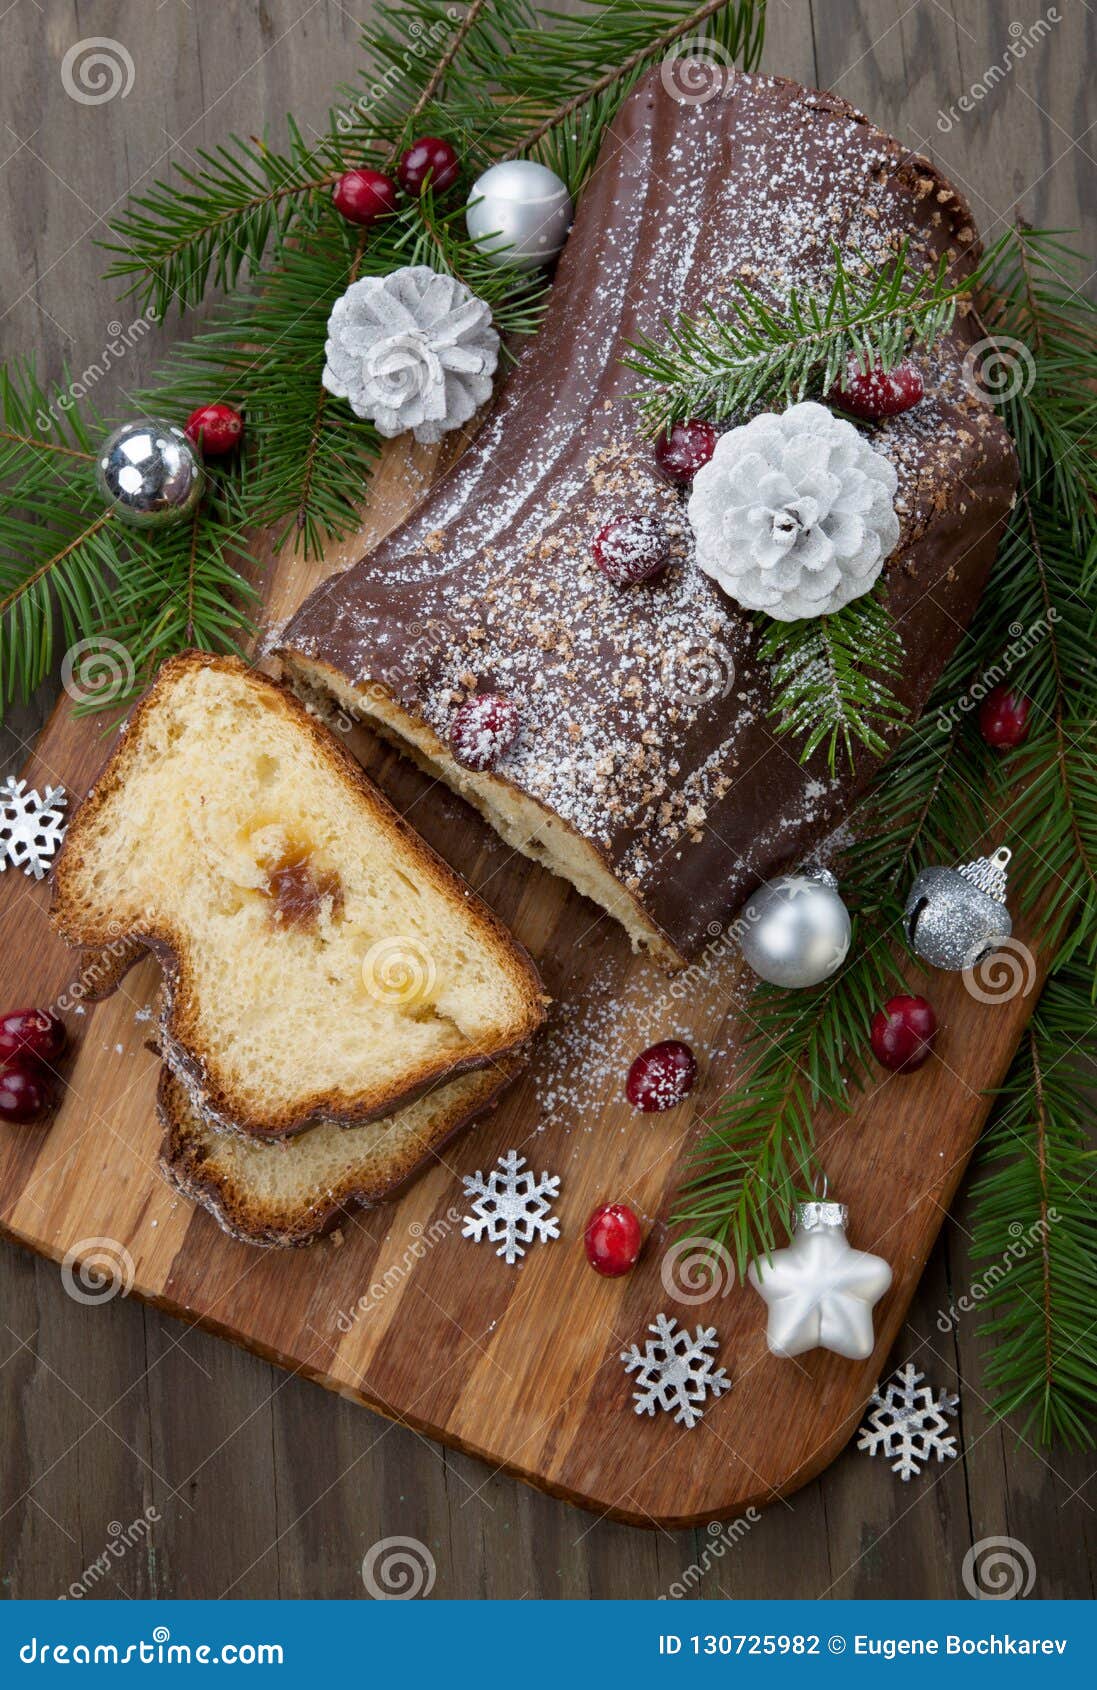 Christmas Chocolate Yule Log Cake Stock Photo - Image of close, fruits ...